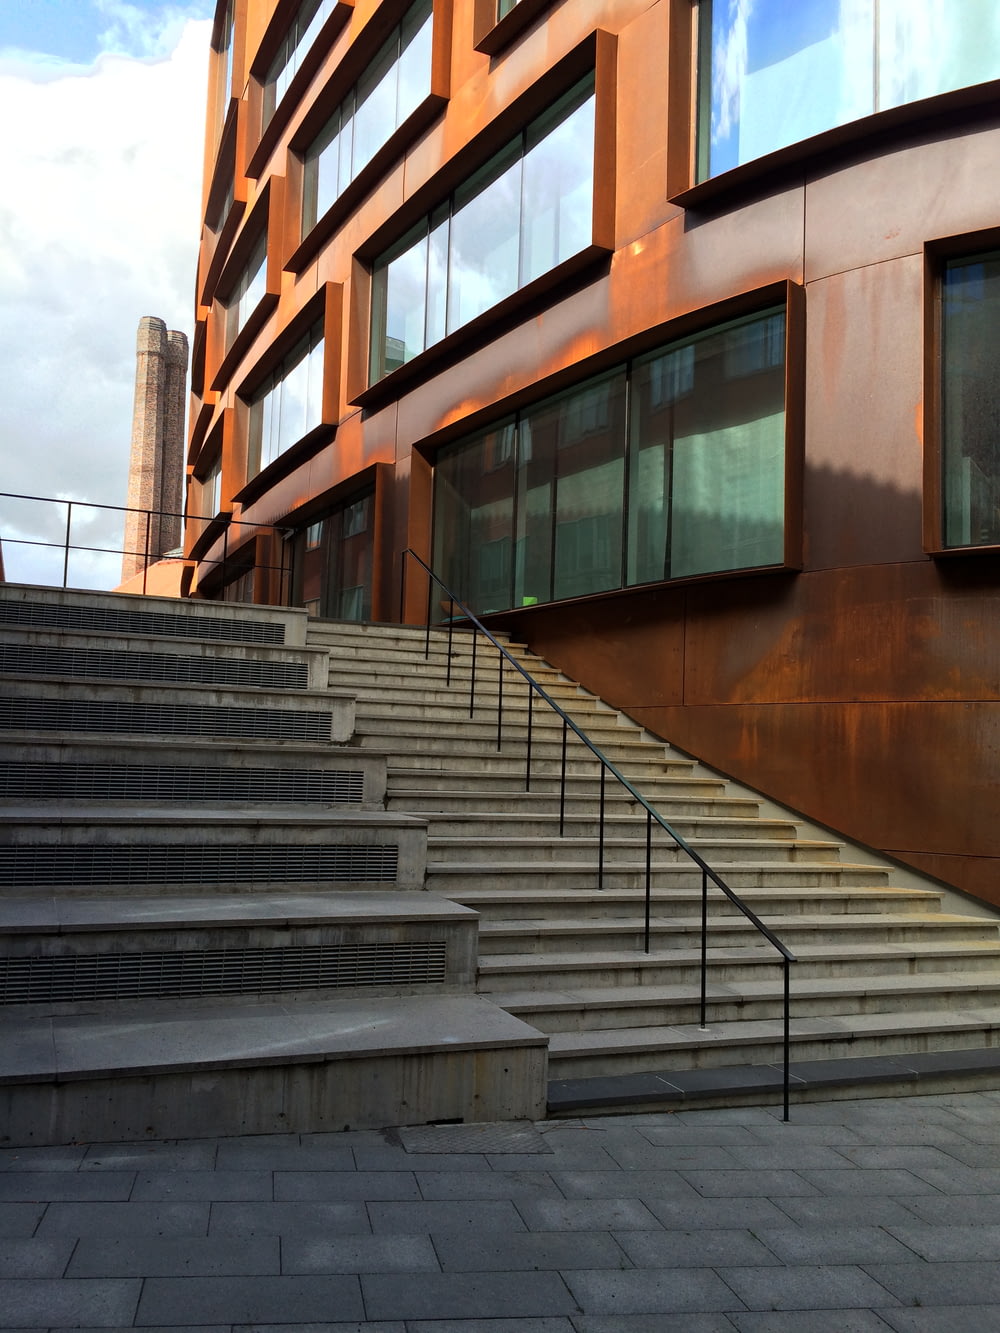 Escalera de hormigón marrón con barandillas de acero inoxidable